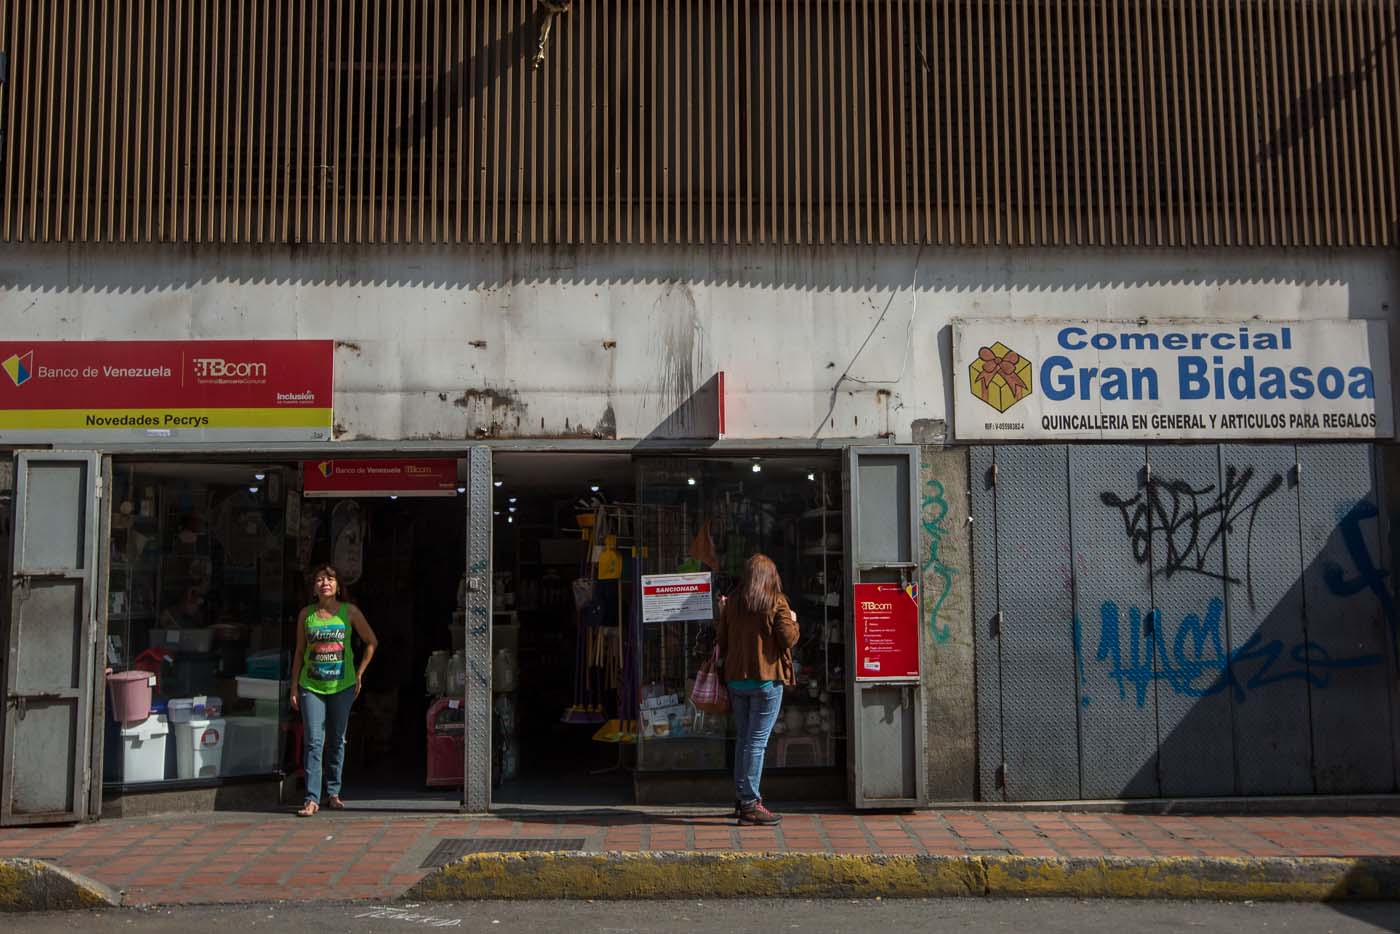 CAR01. CARACAS (VENEZUELA), 28/10/2016.- Un local comercial abierto y otro cerrado hoy, viernes 28 de octubre de 2016, en Caracas (Venezuela). El paro general de 12 horas convocado por la oposición venezolana se cumple a medias en el país pues tanto las entidades bancarias como algunos comercios y oficinas abrieron sus puertas, sin embargo, las principales vías se mostraron con mucho menos tráfico que el que se observa en un día laboral normal. EFE/MIGUEL GUTIÈRREZ